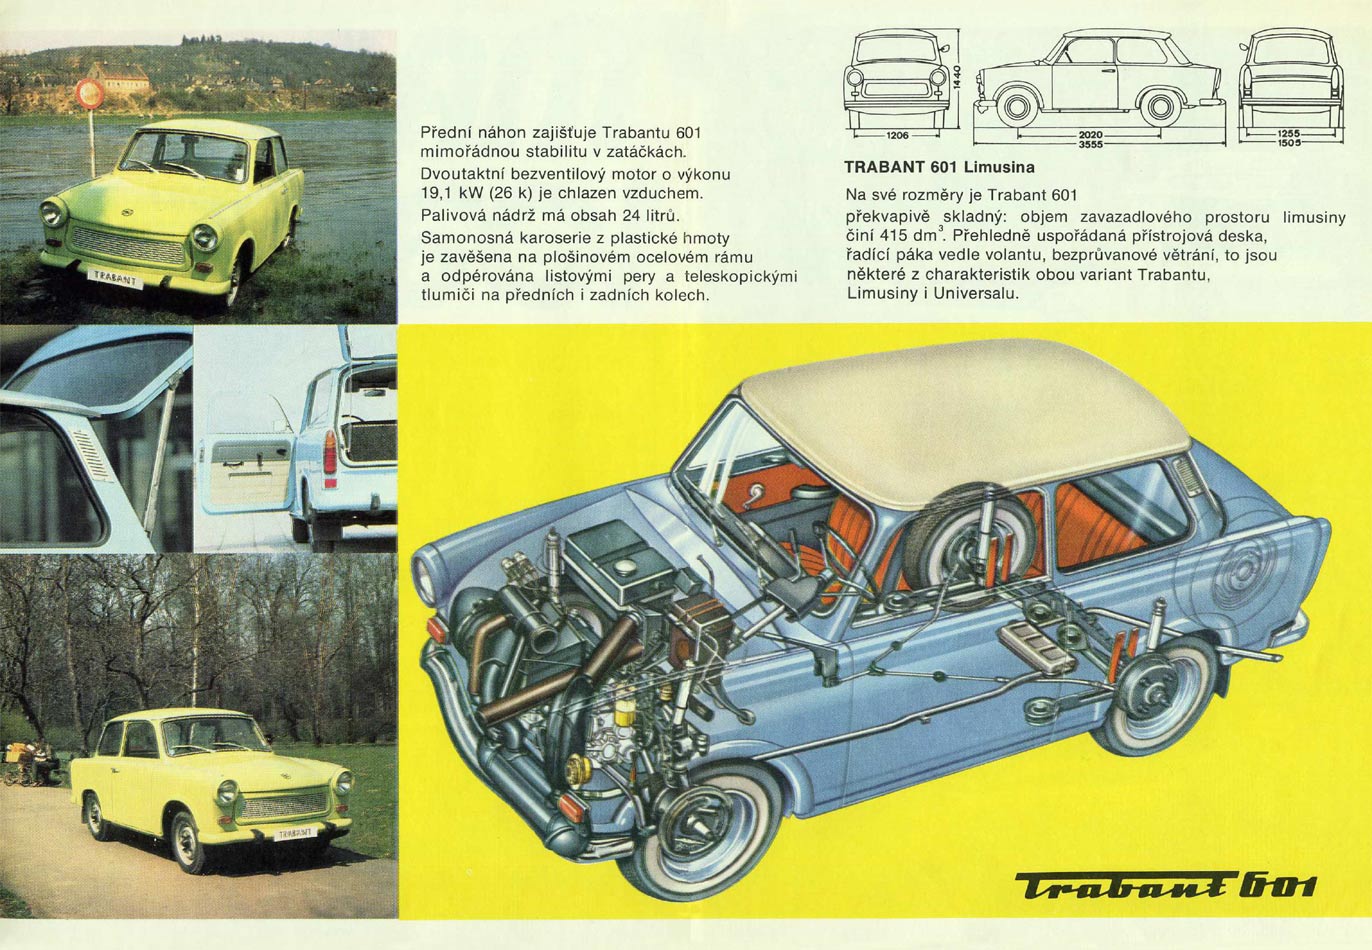 1979 - Trabant P 601 - Seite 2und 3